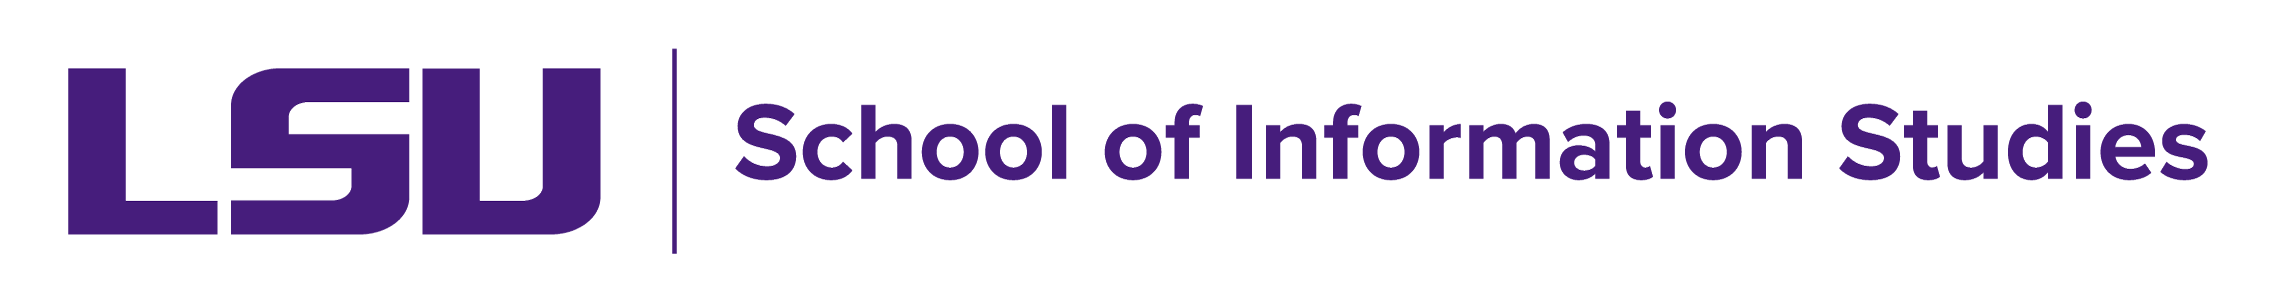 School of Information Studies Logo